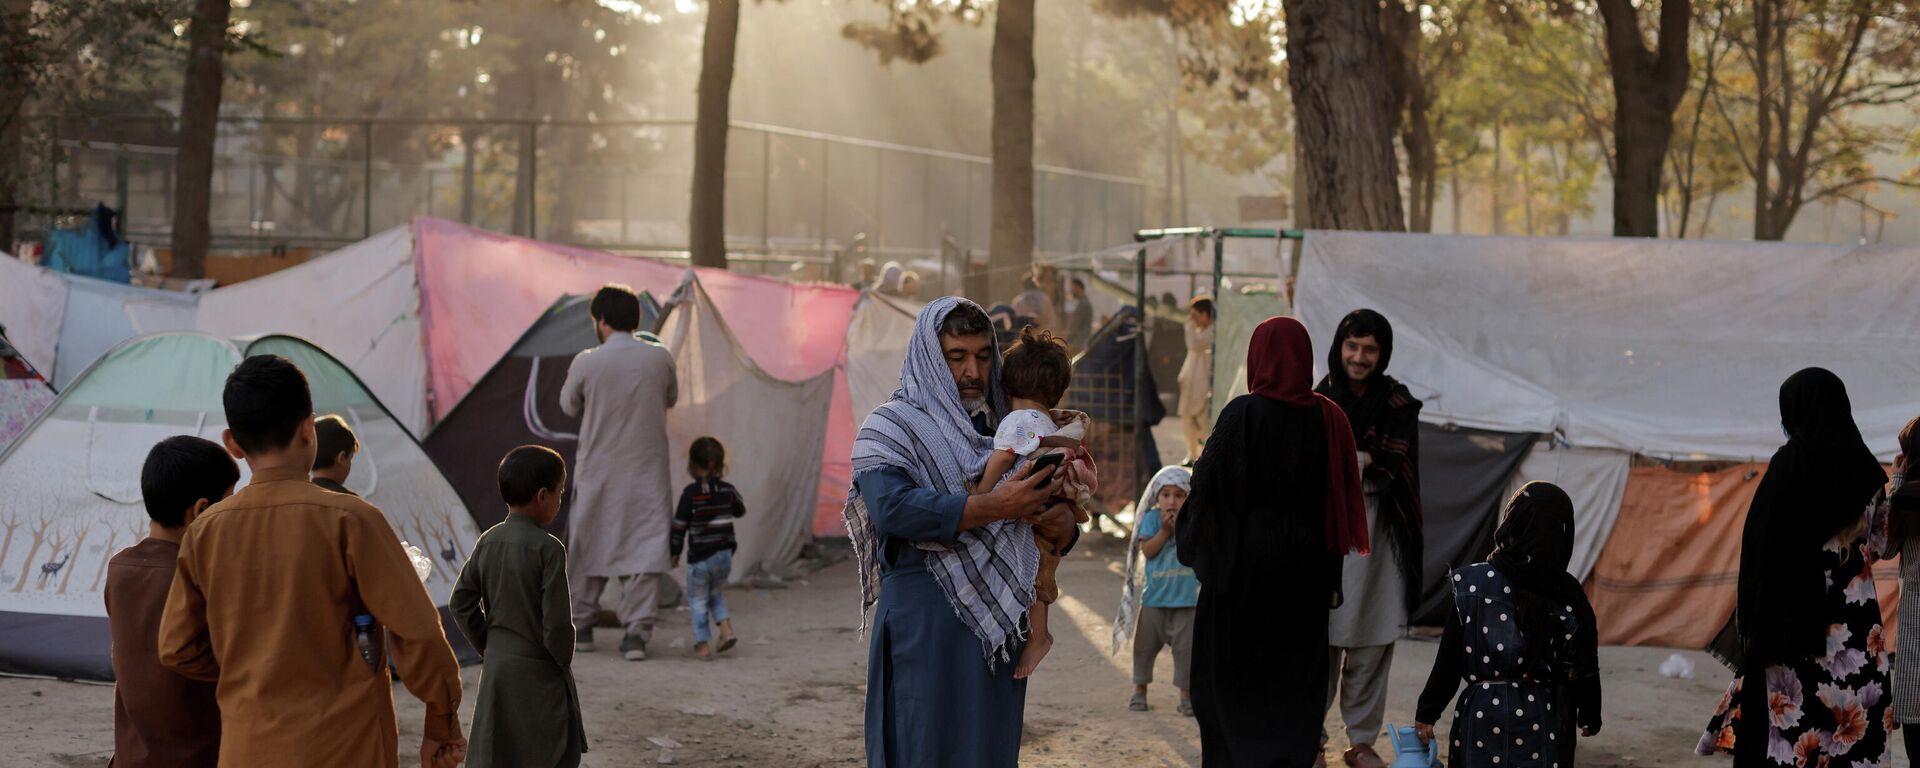 Familias afganas desplazadas, que huyen de la violencia en sus provincias, cerca de tiendas de campaña en el parque Shahr-e Naw, en Kabul, Afganistán, 4 de octubre de 2021 - Sputnik Mundo, 1920, 04.10.2021